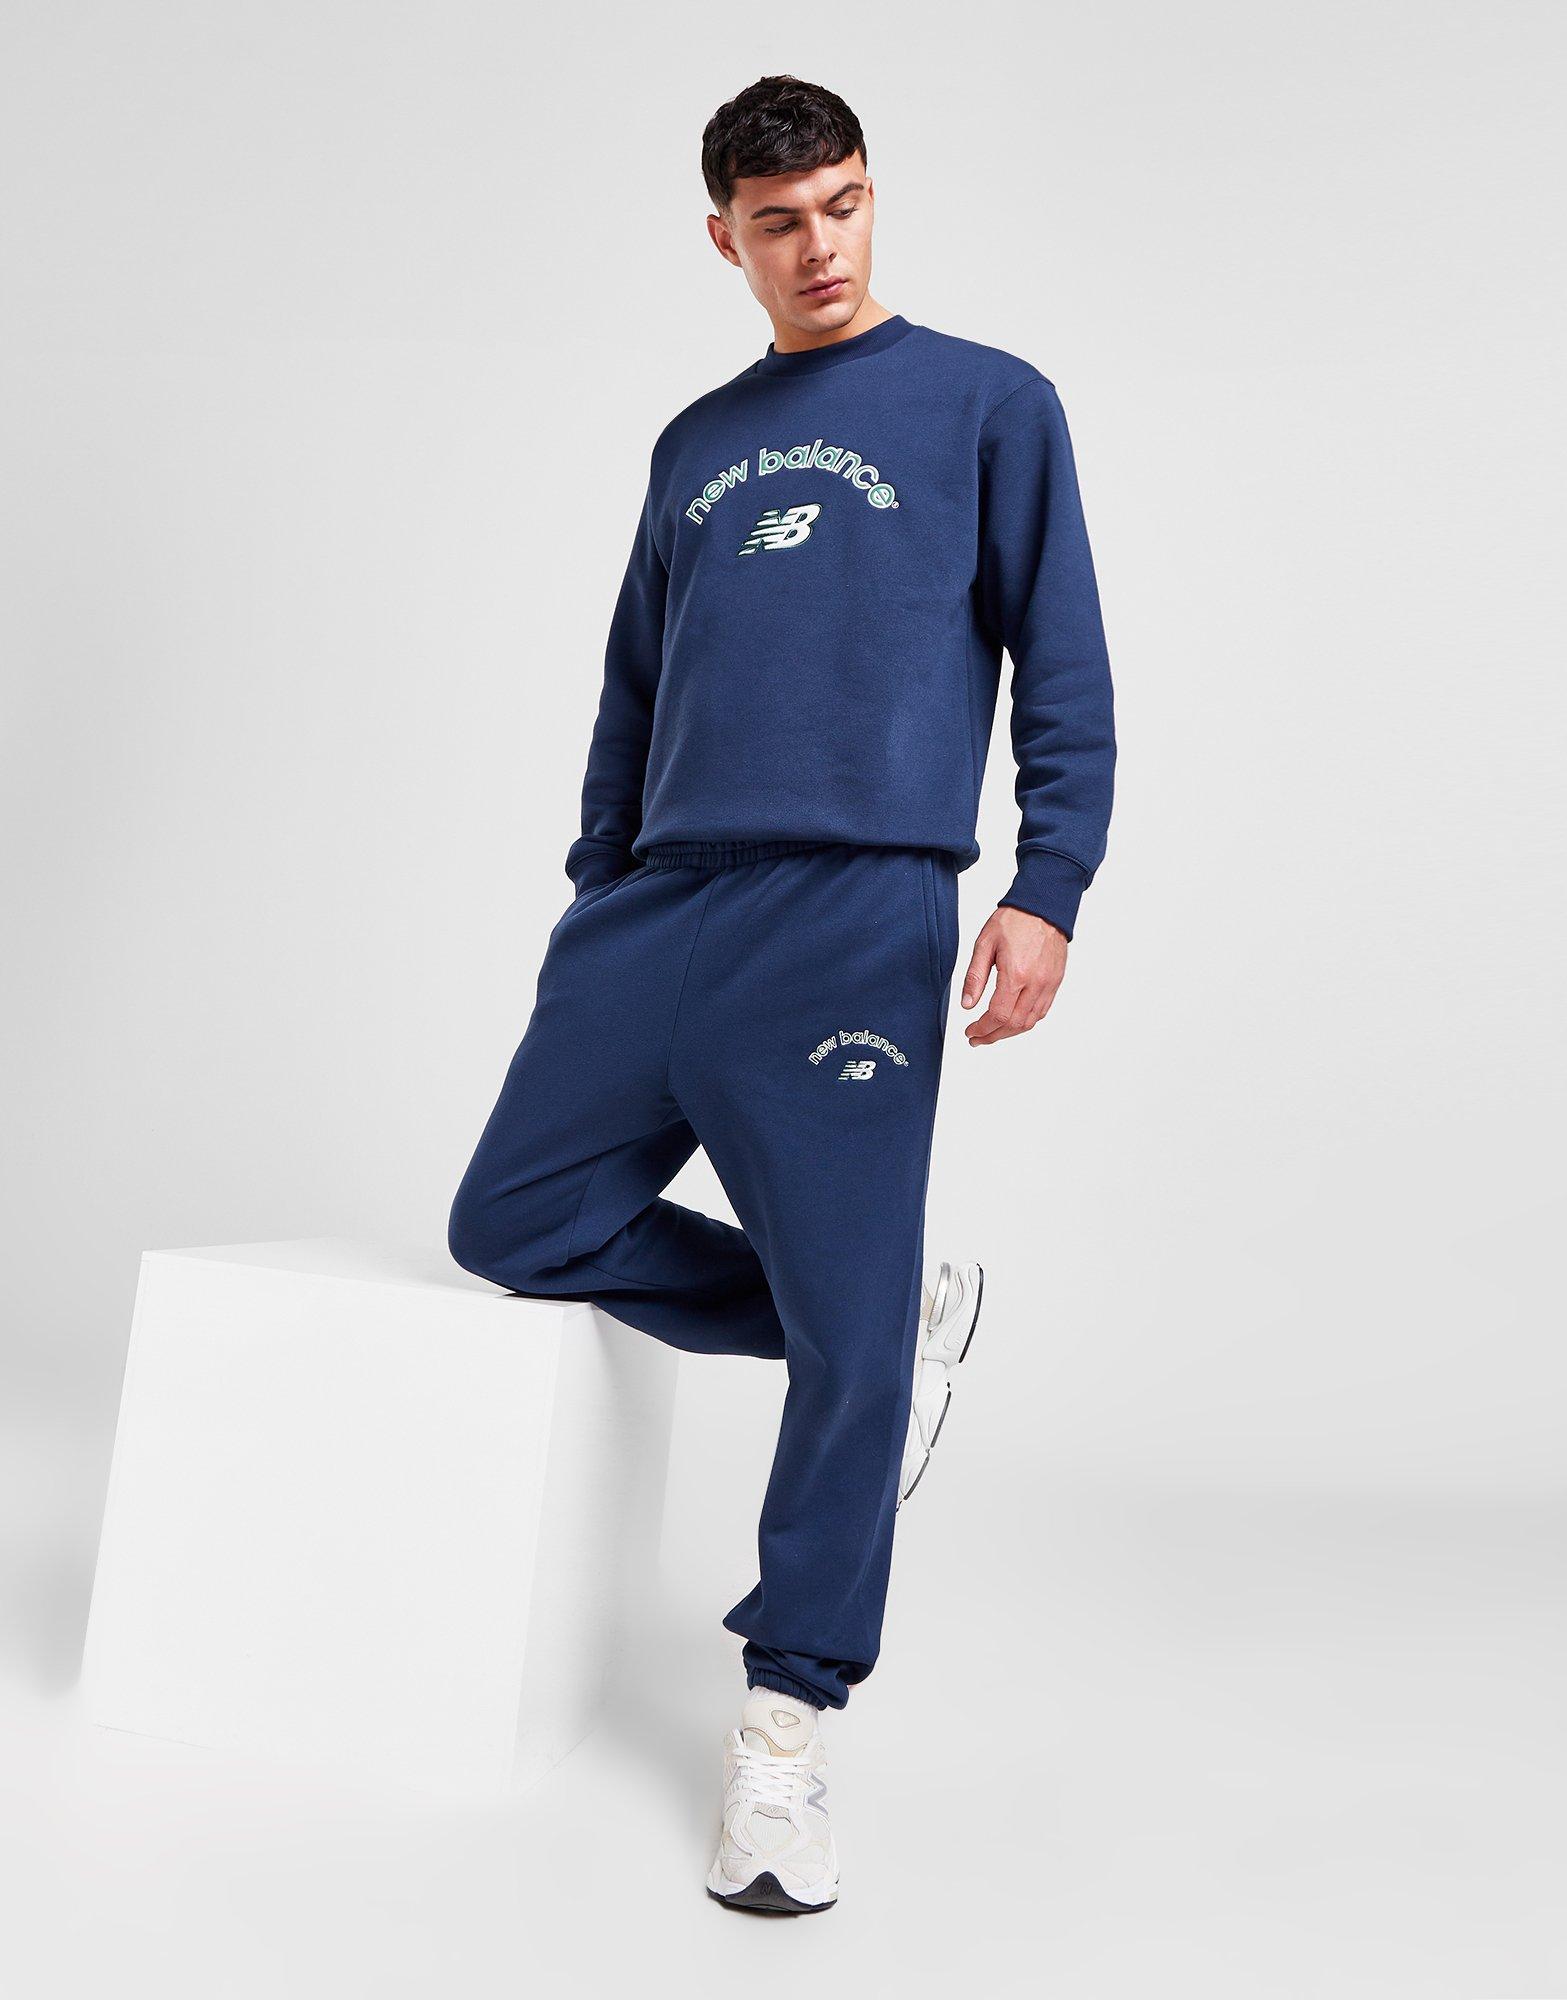 Cookies Sweatpants Mens XL Blue Logo Joggers Authentic Ankle Cinch